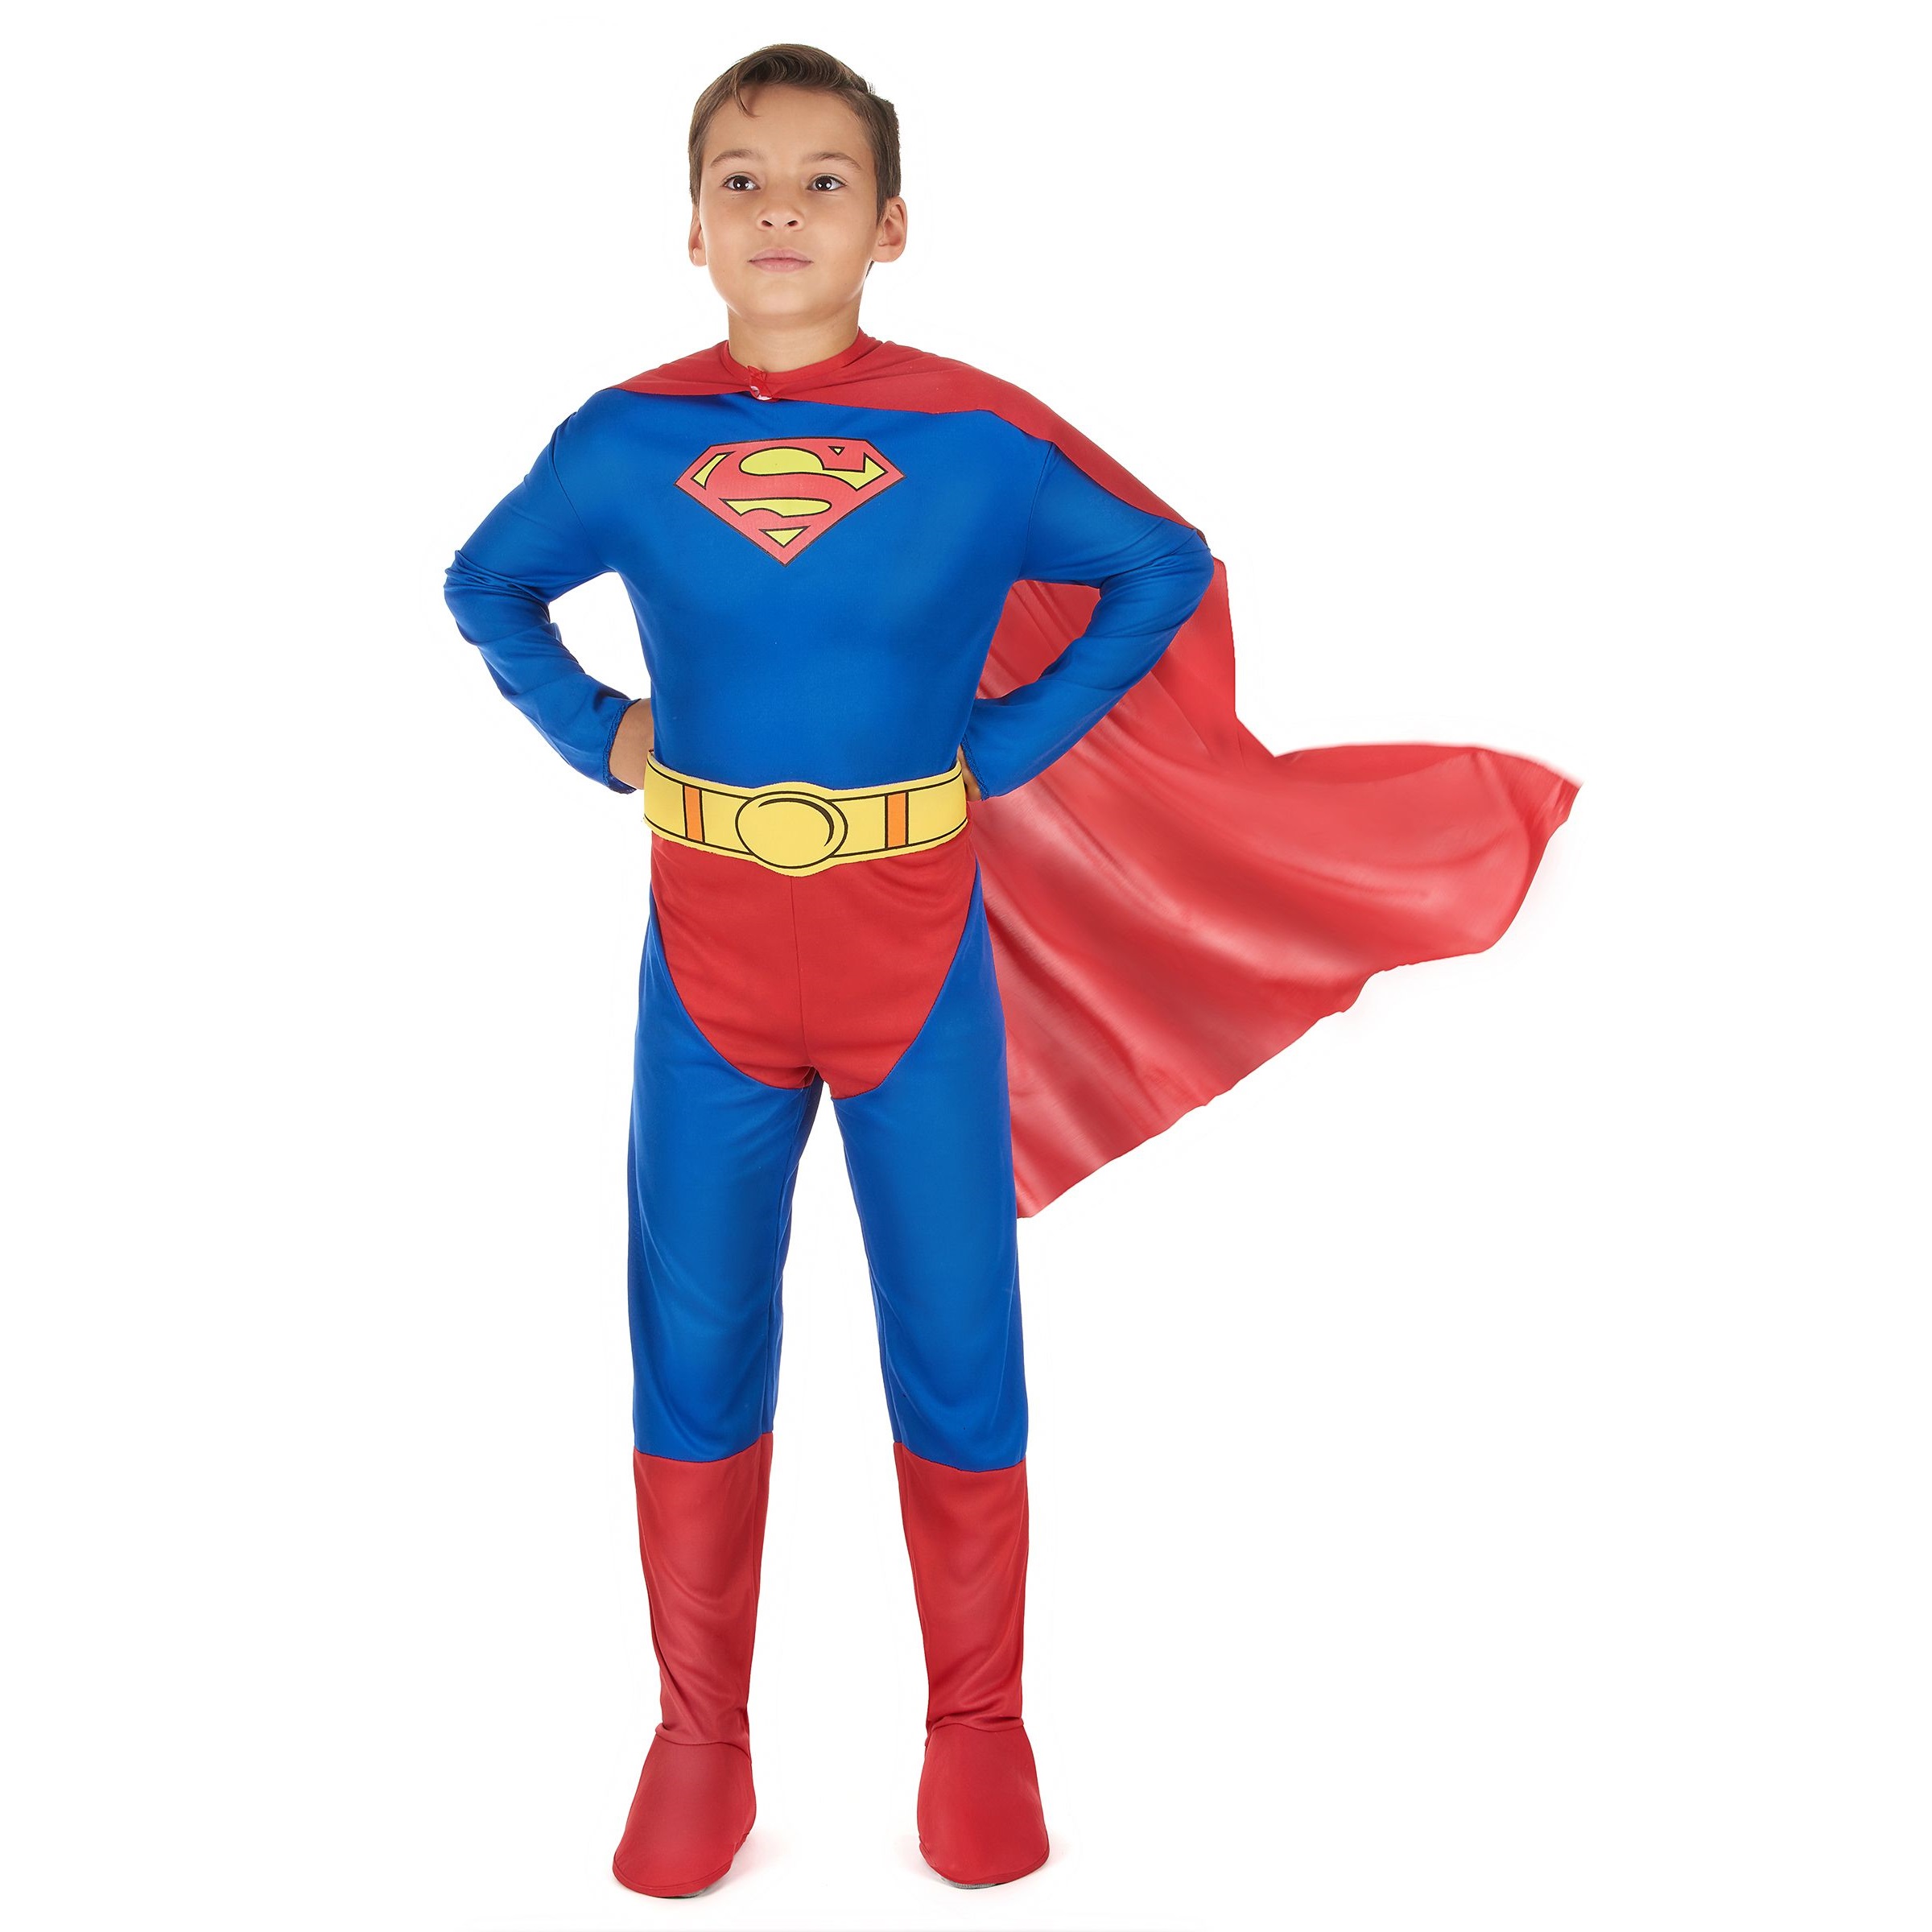 Capa Superman - El Cotillonero